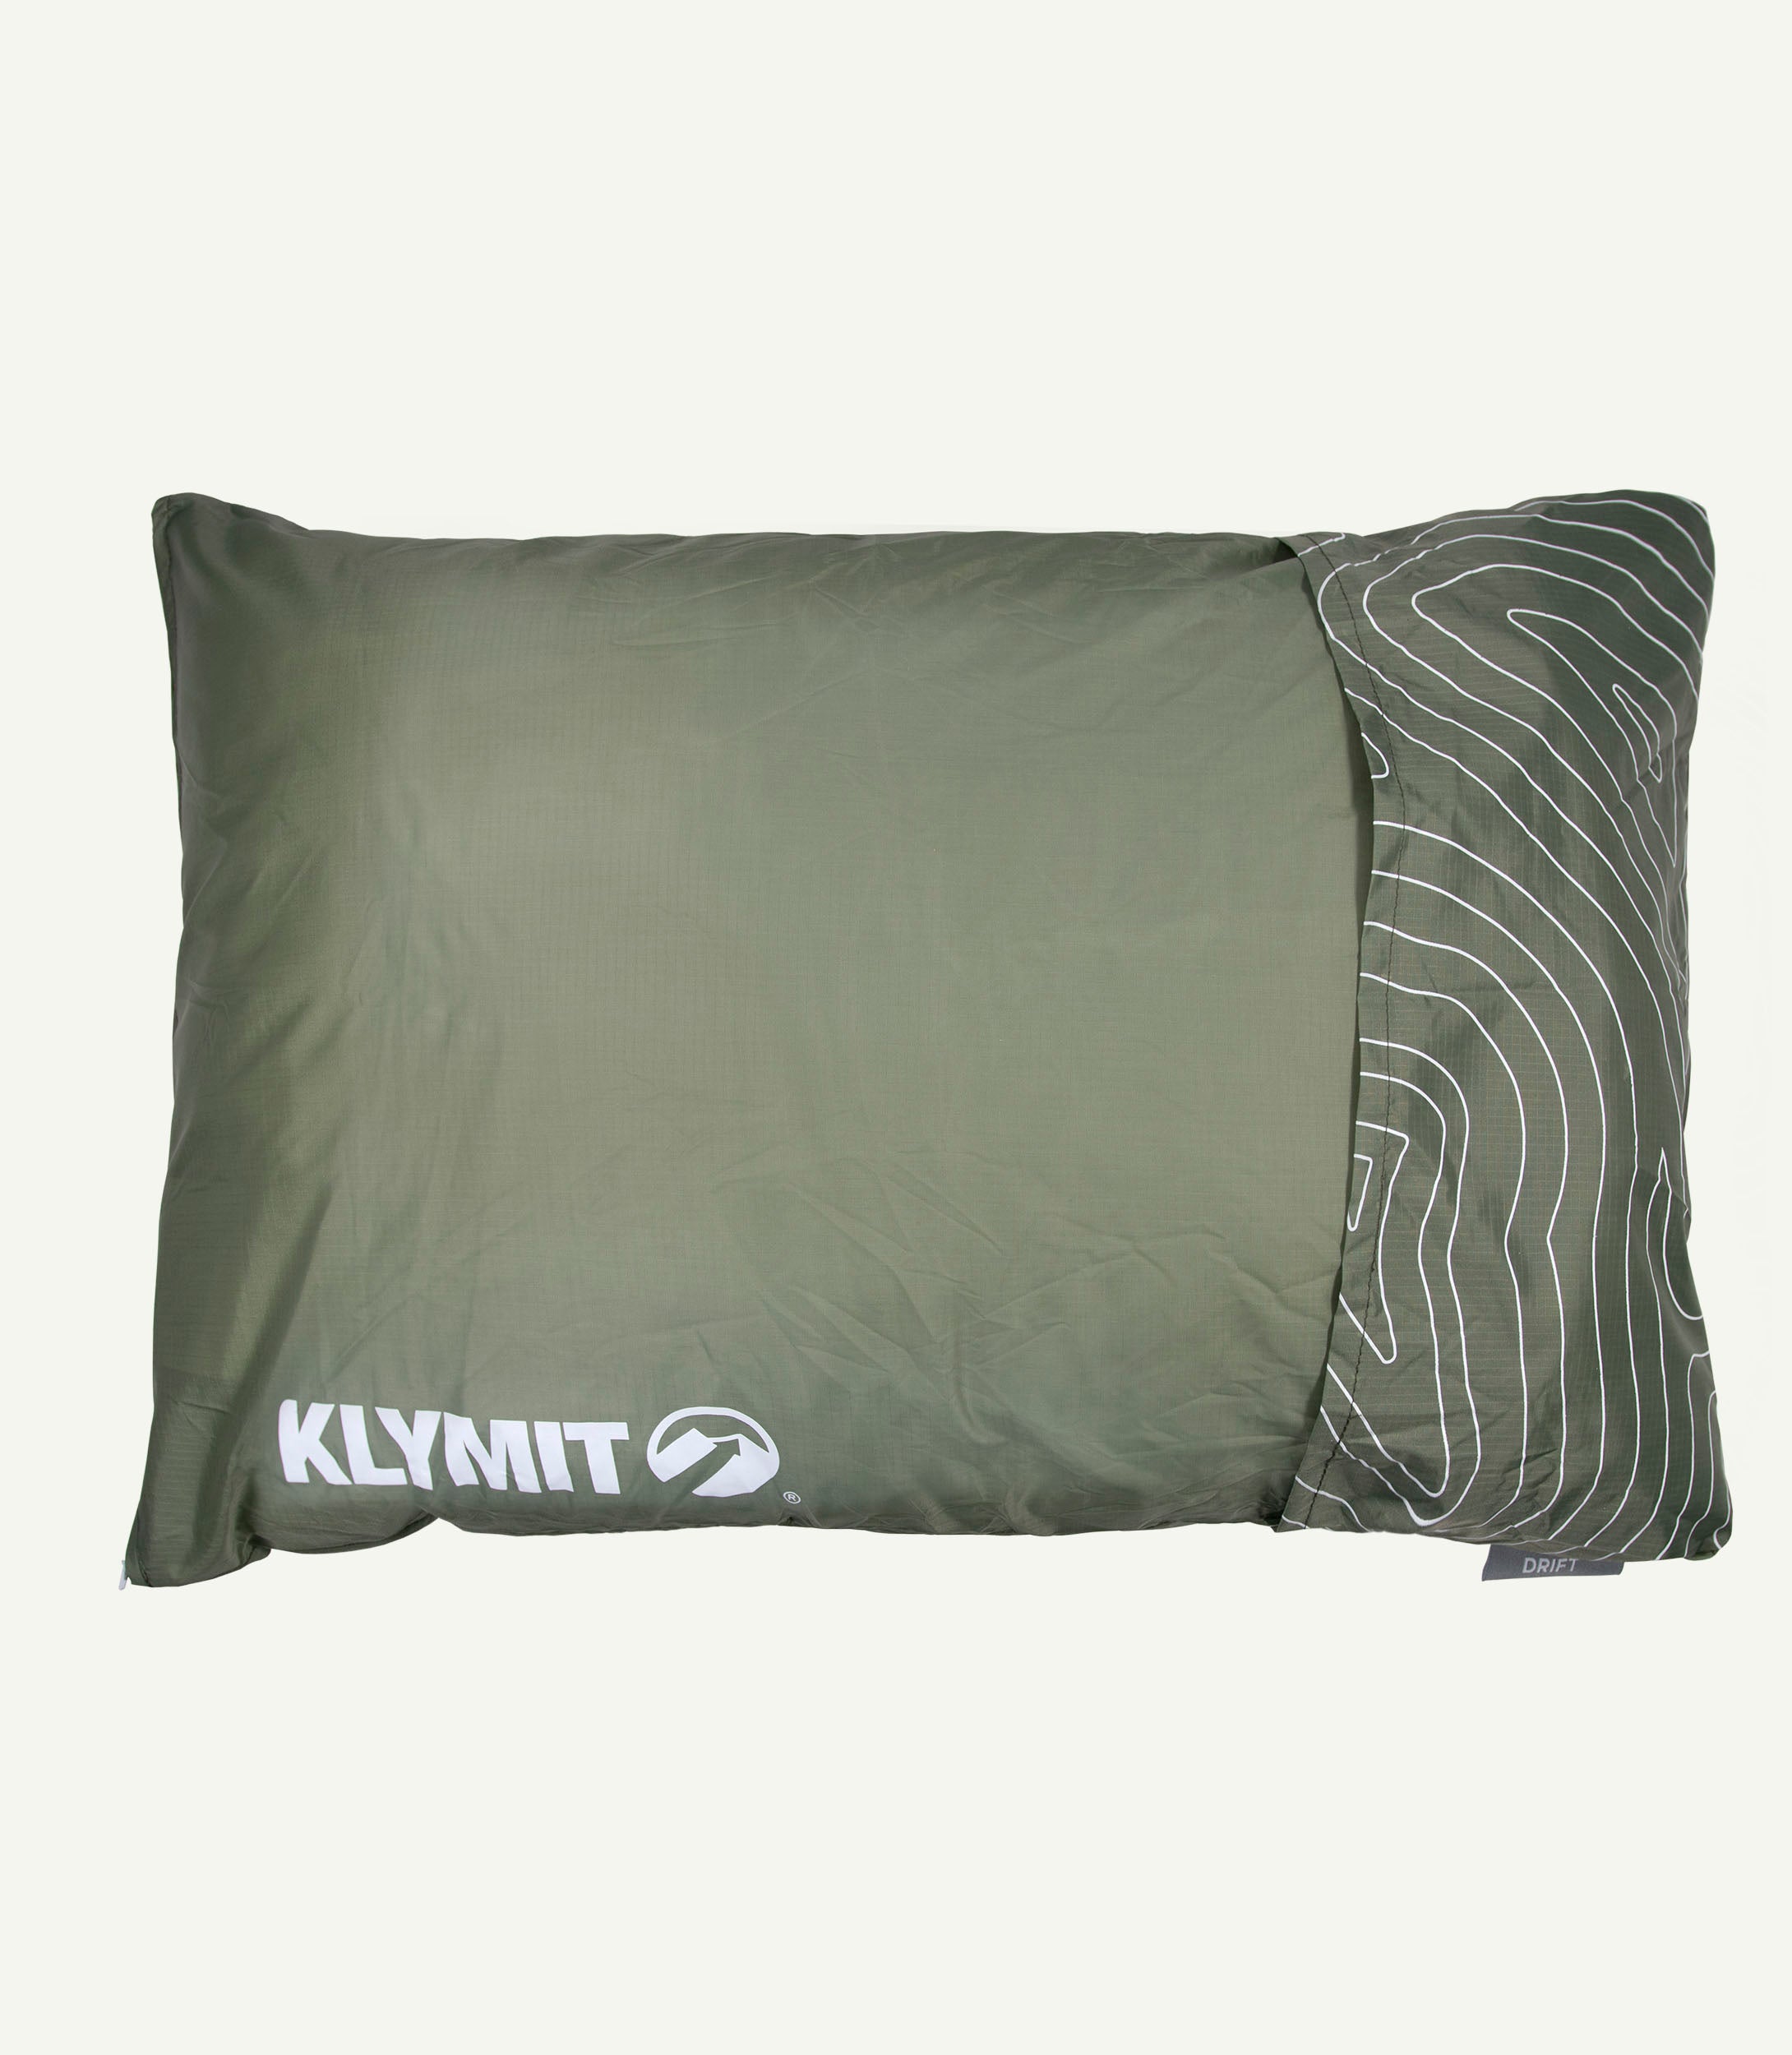 Drift-Pillow Campingkissen LARGE Green